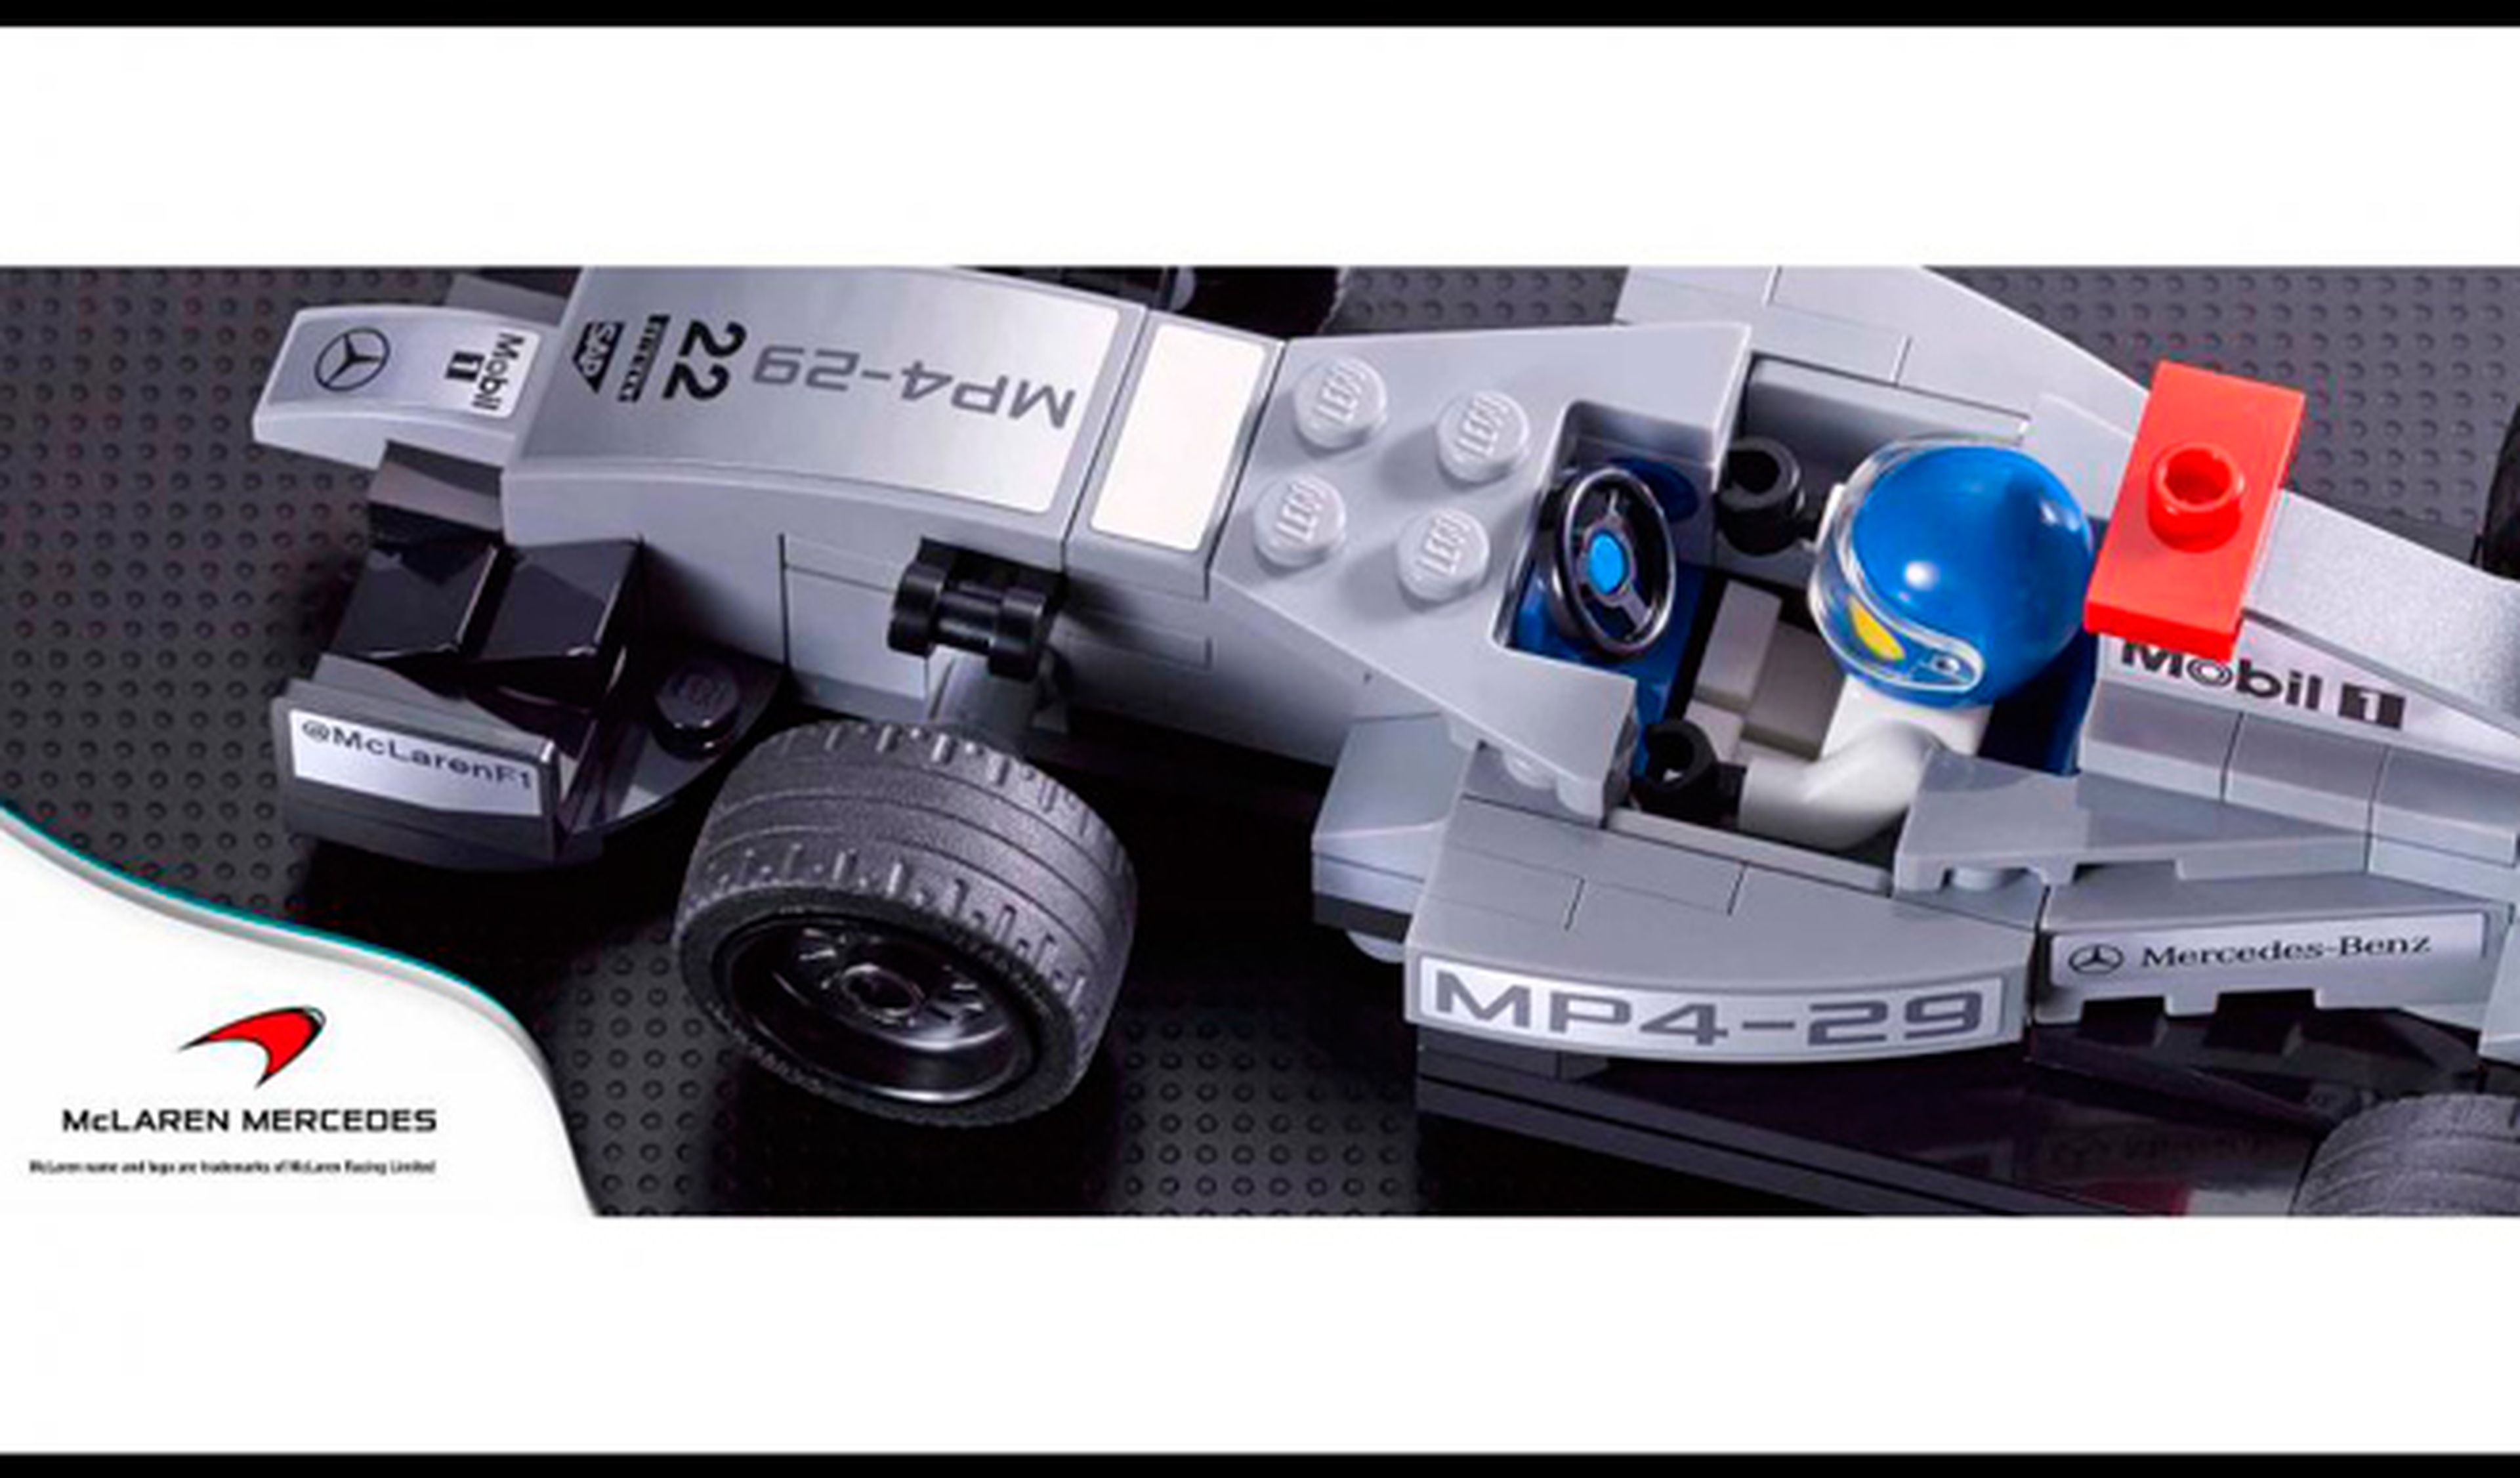 LEGO venderá kits de coches de Ferrari, McLaren o Porsche